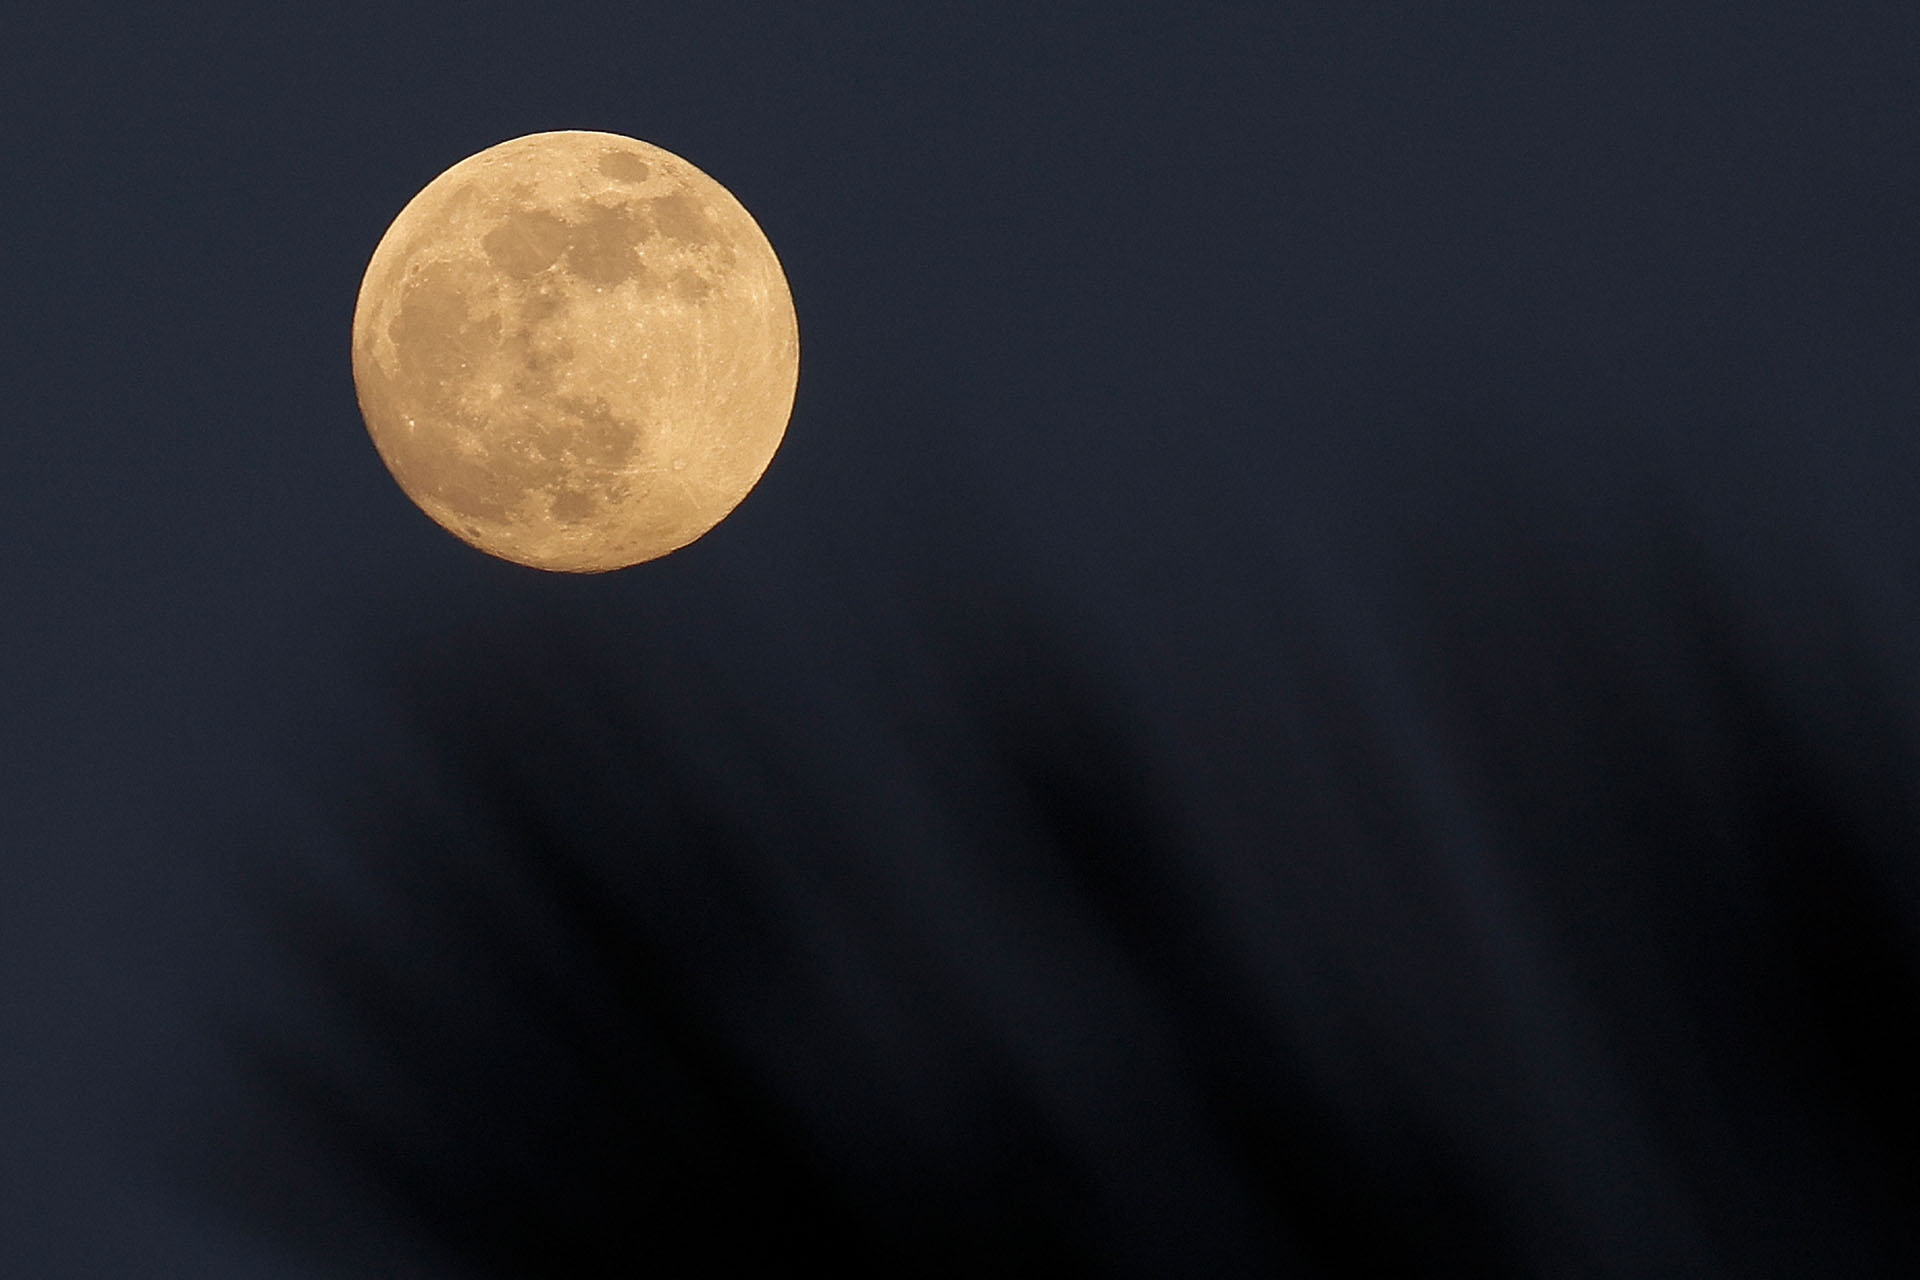 Superluna no es un término astronómico oficial, pero generalmente se usa para describir una Luna llena que se encuentra dentro de al menos el 90 por ciento del perigeo. (Photo by David GANNON / AFP)